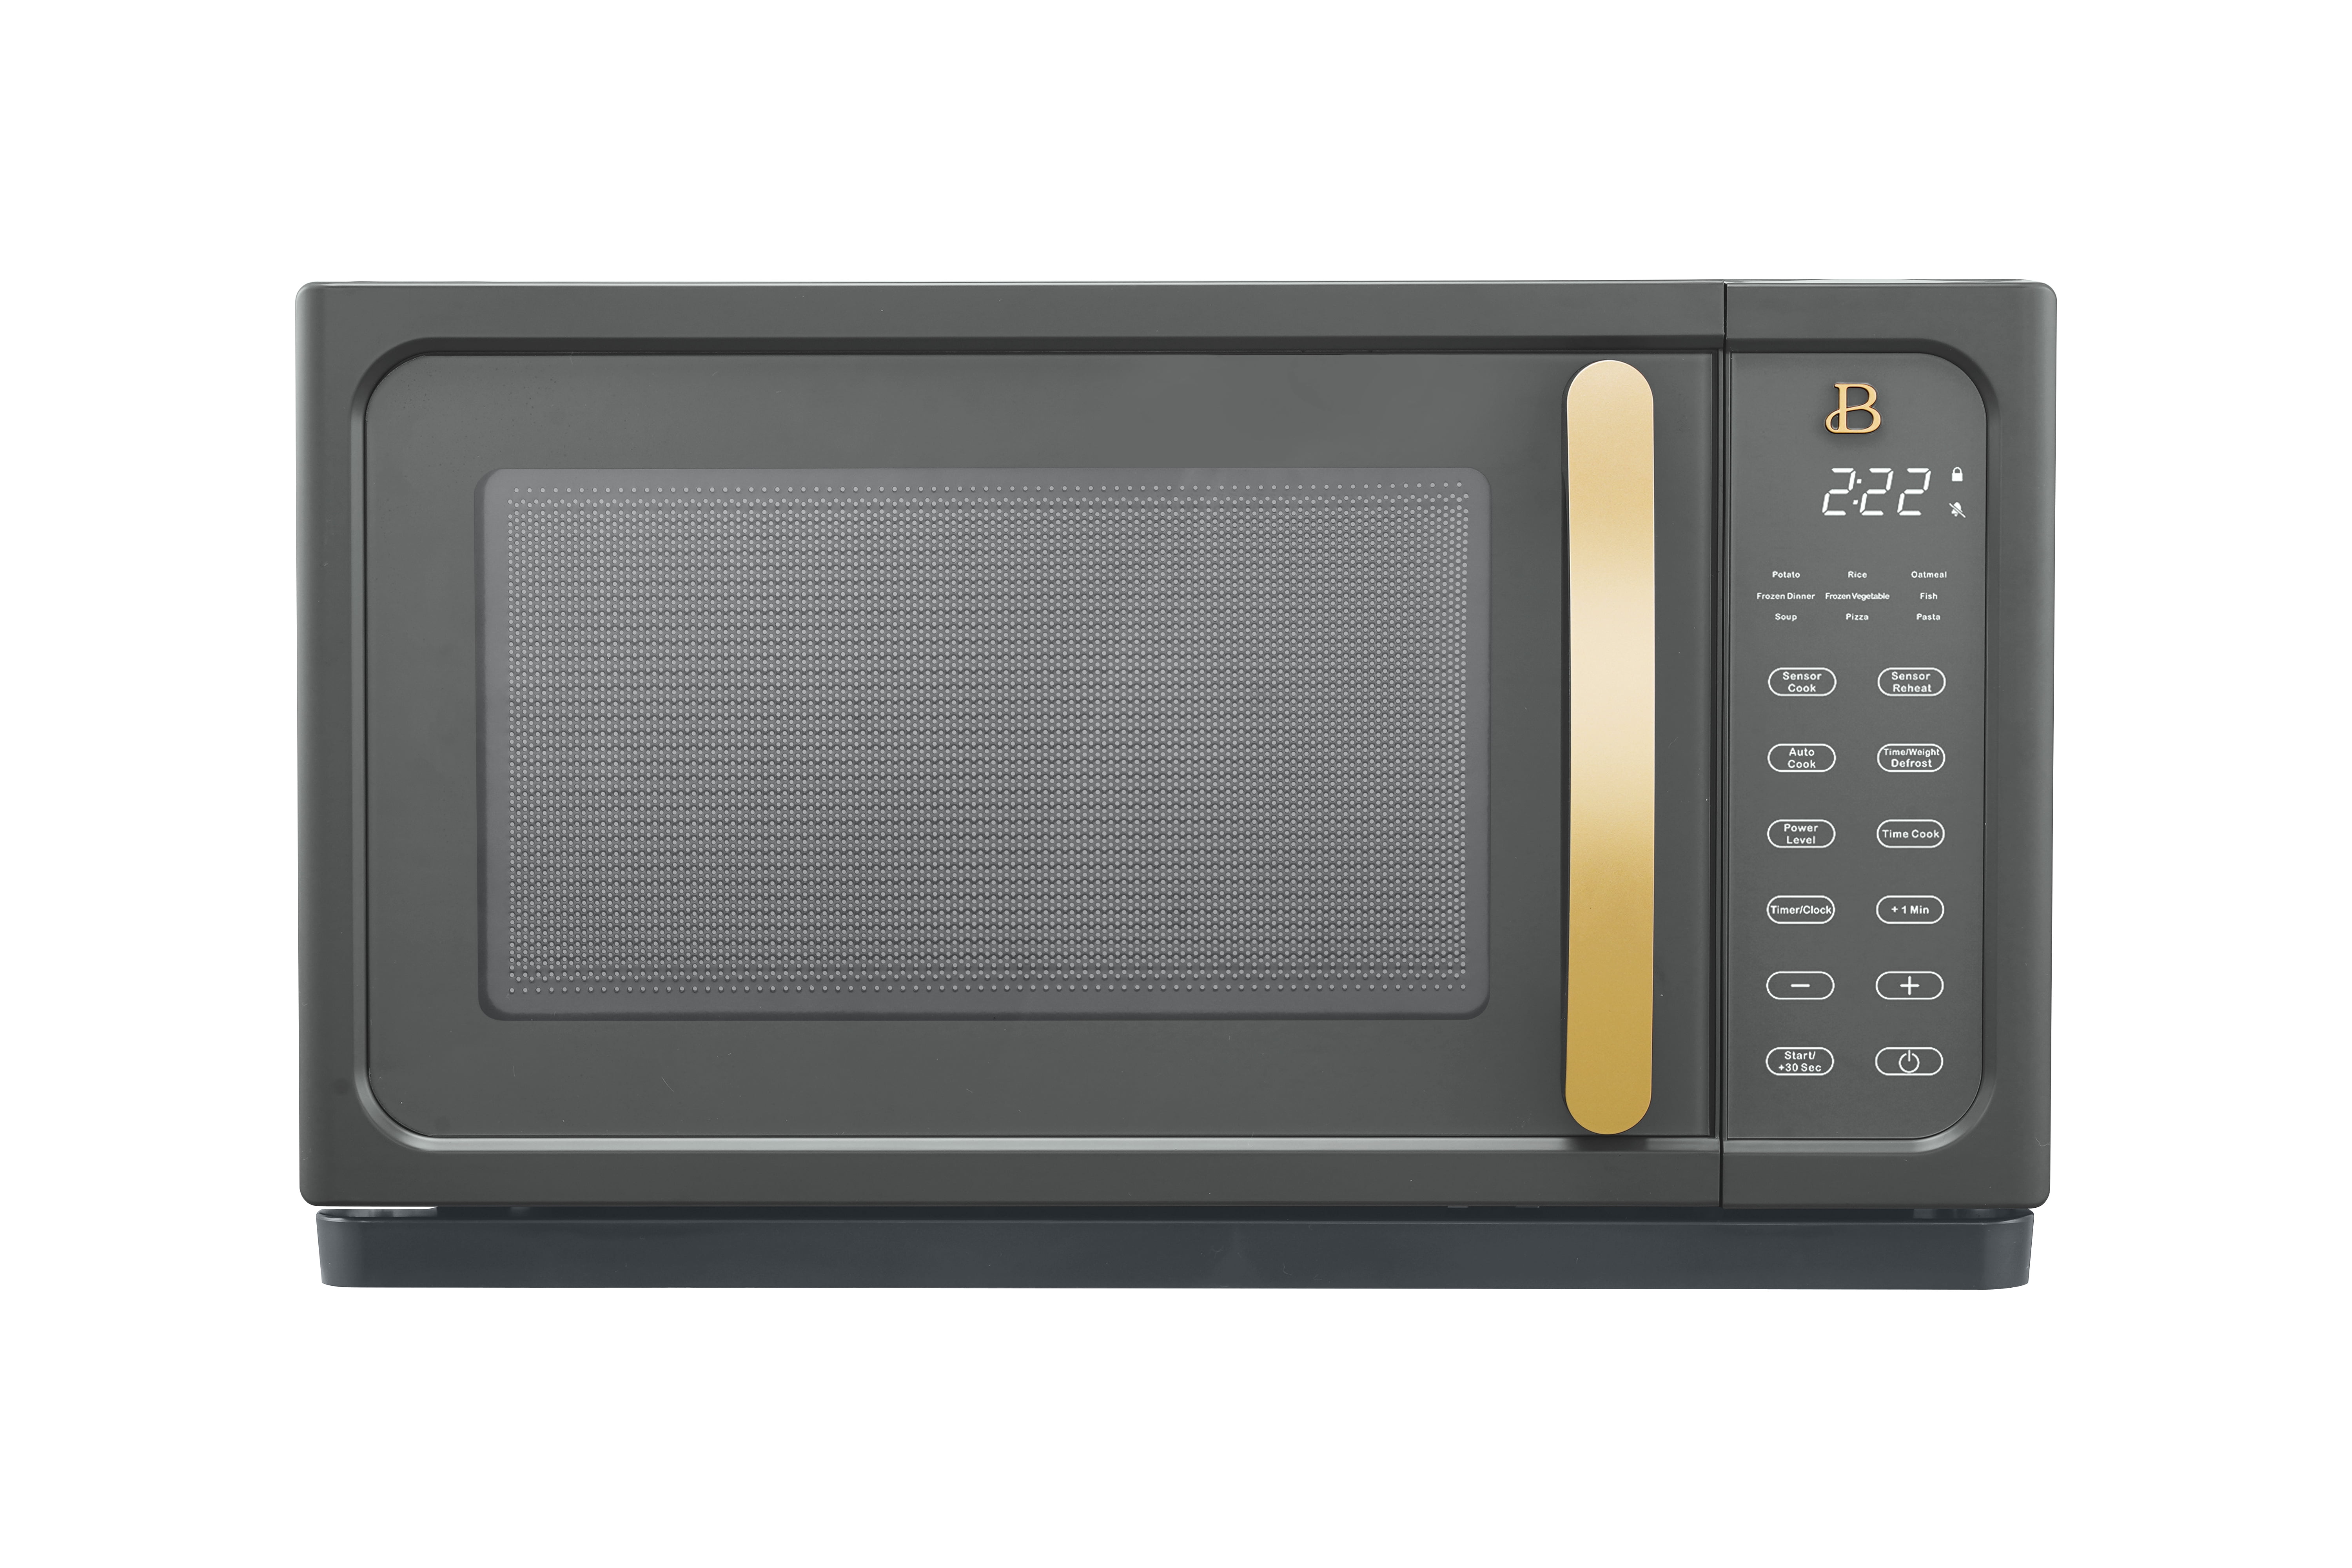 Beautiful 1.1 Cu ft 1000 Watt, Sensor Microwave Oven Oyster Grey by Drew  Barrymore, New